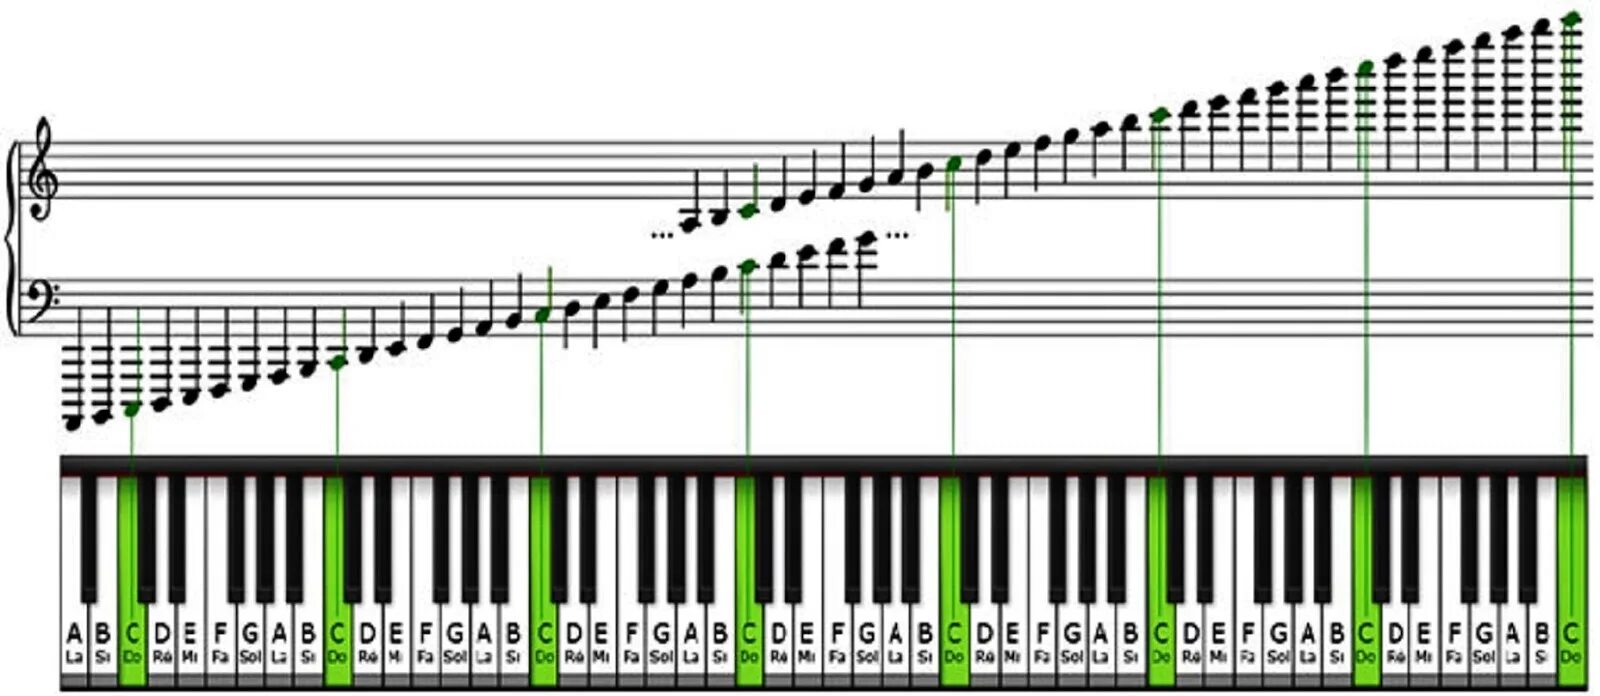 2 3 октавы. Ноты на синтезаторе 61 клавиша. Диапазон фортепиано октавы. Расположение нот на клавишах синтезатора 61 клавиша. Расположение нот на синтезаторе 61 клавиша.